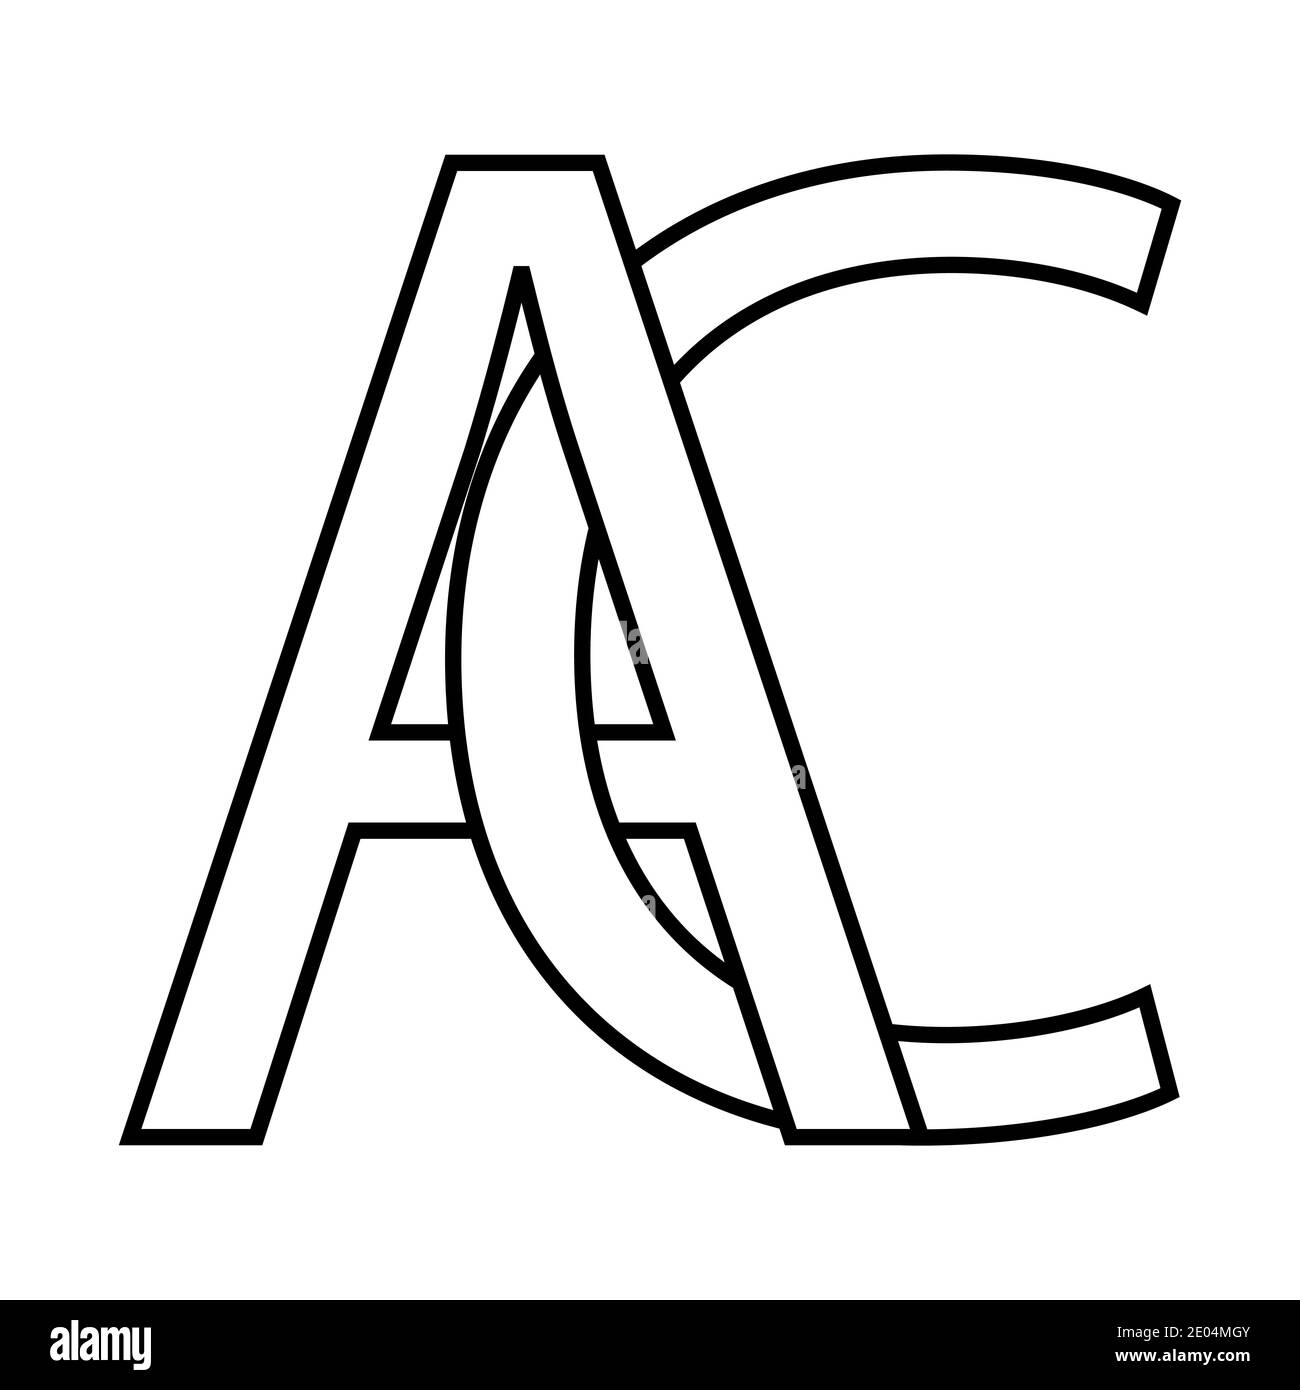 Logo ac Symbol Zeichen zwei Zeilensprungbuchstaben A C Vektor Logo ac erste Großbuchstaben Muster Alphabet a c Stock Vektor